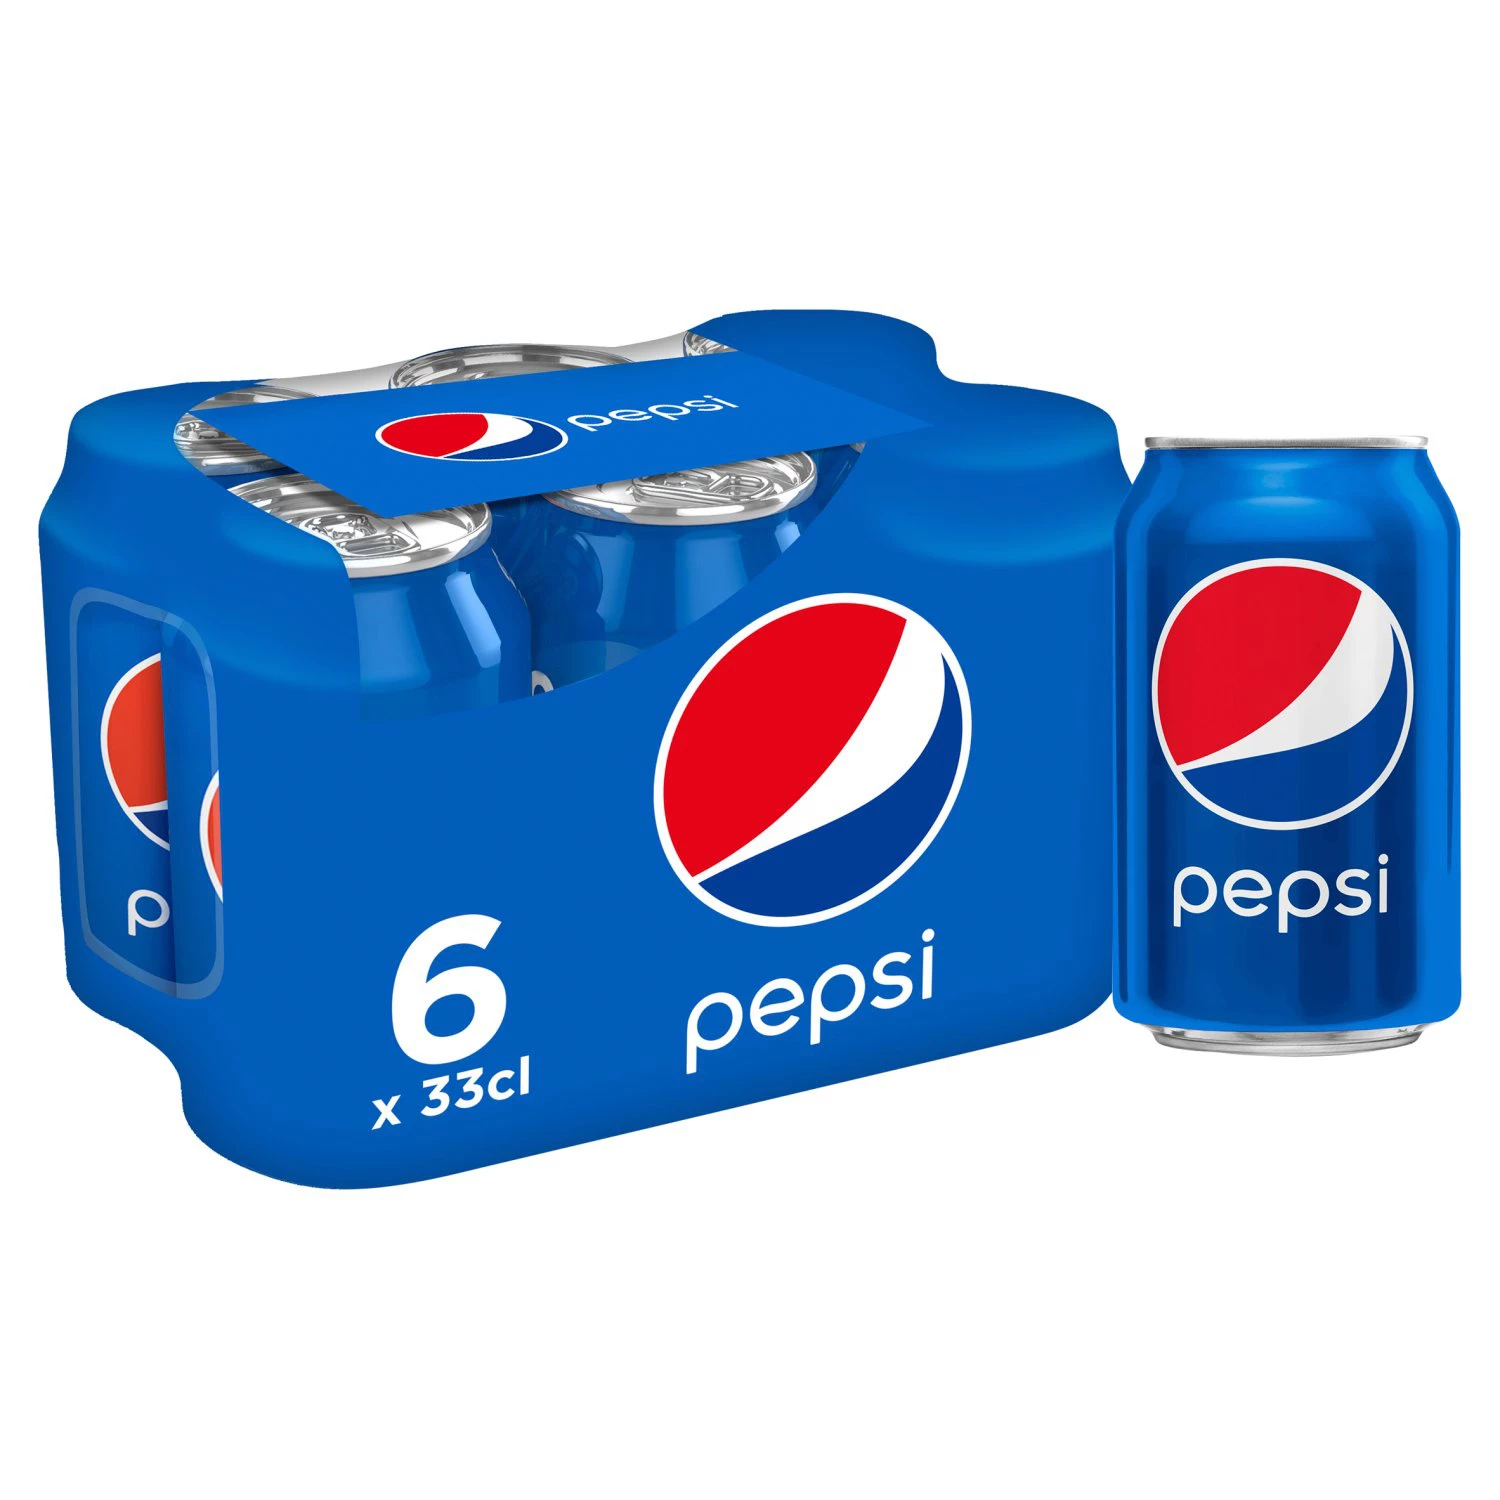 Pepsi Uefa 6x33cl